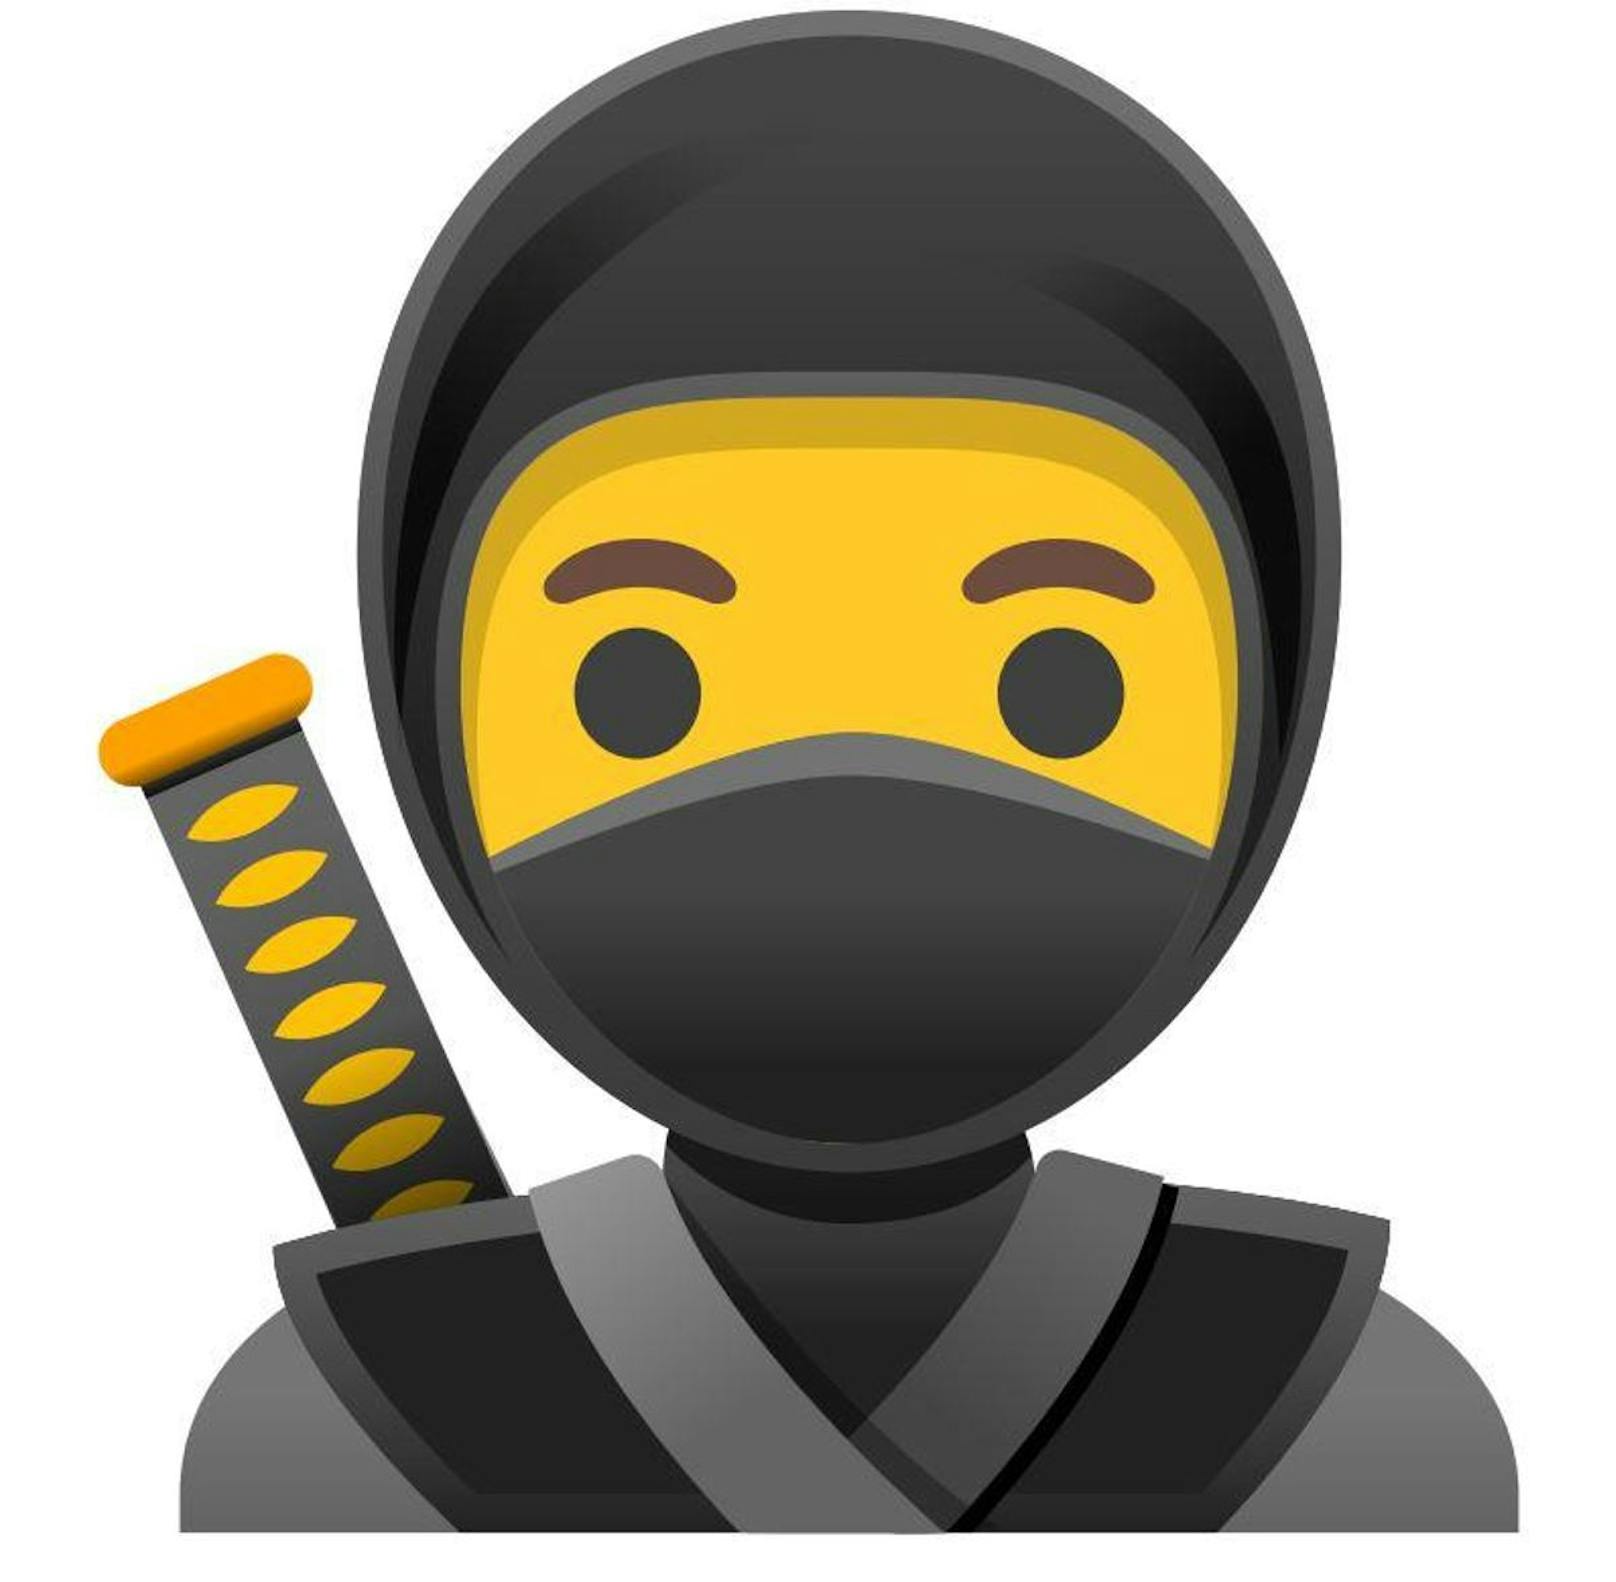 Mit dem System-Update kommen zahlreiche weitere Emojis auf die Handys, etwa ein Ninja.